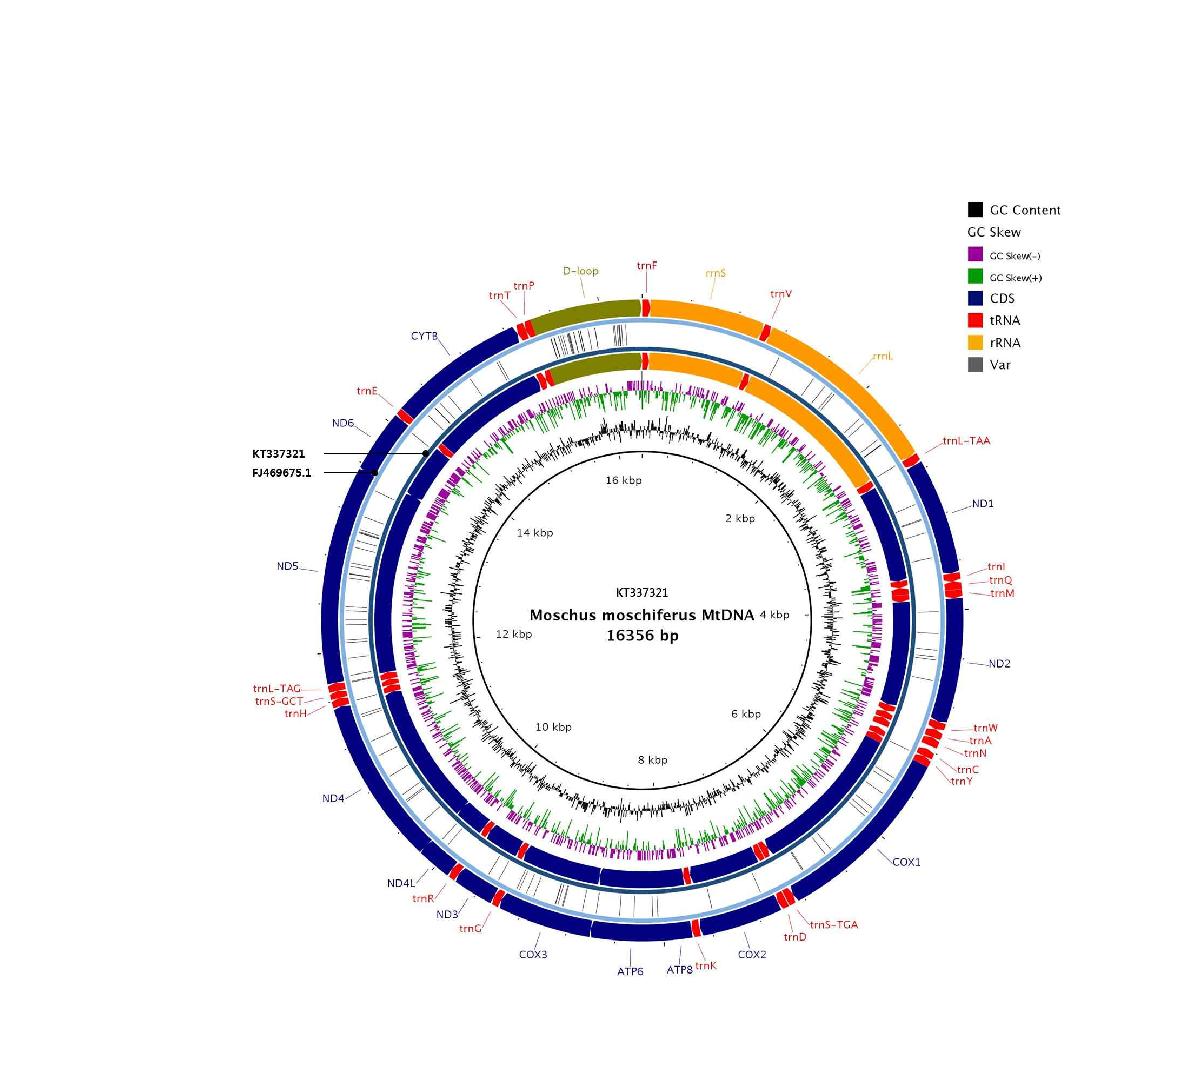 국내 사향노루 미토콘드리아와 GenBank 사향노루 미토콘드리아 서열 비교 * inner 환형 게놈은 KT337321로써 국내 사향노루 Mito-genome이고 outer 환형 게놈은 FJ469675로써 GenBank에서 확보한 Mito-genome(황 등 2010)